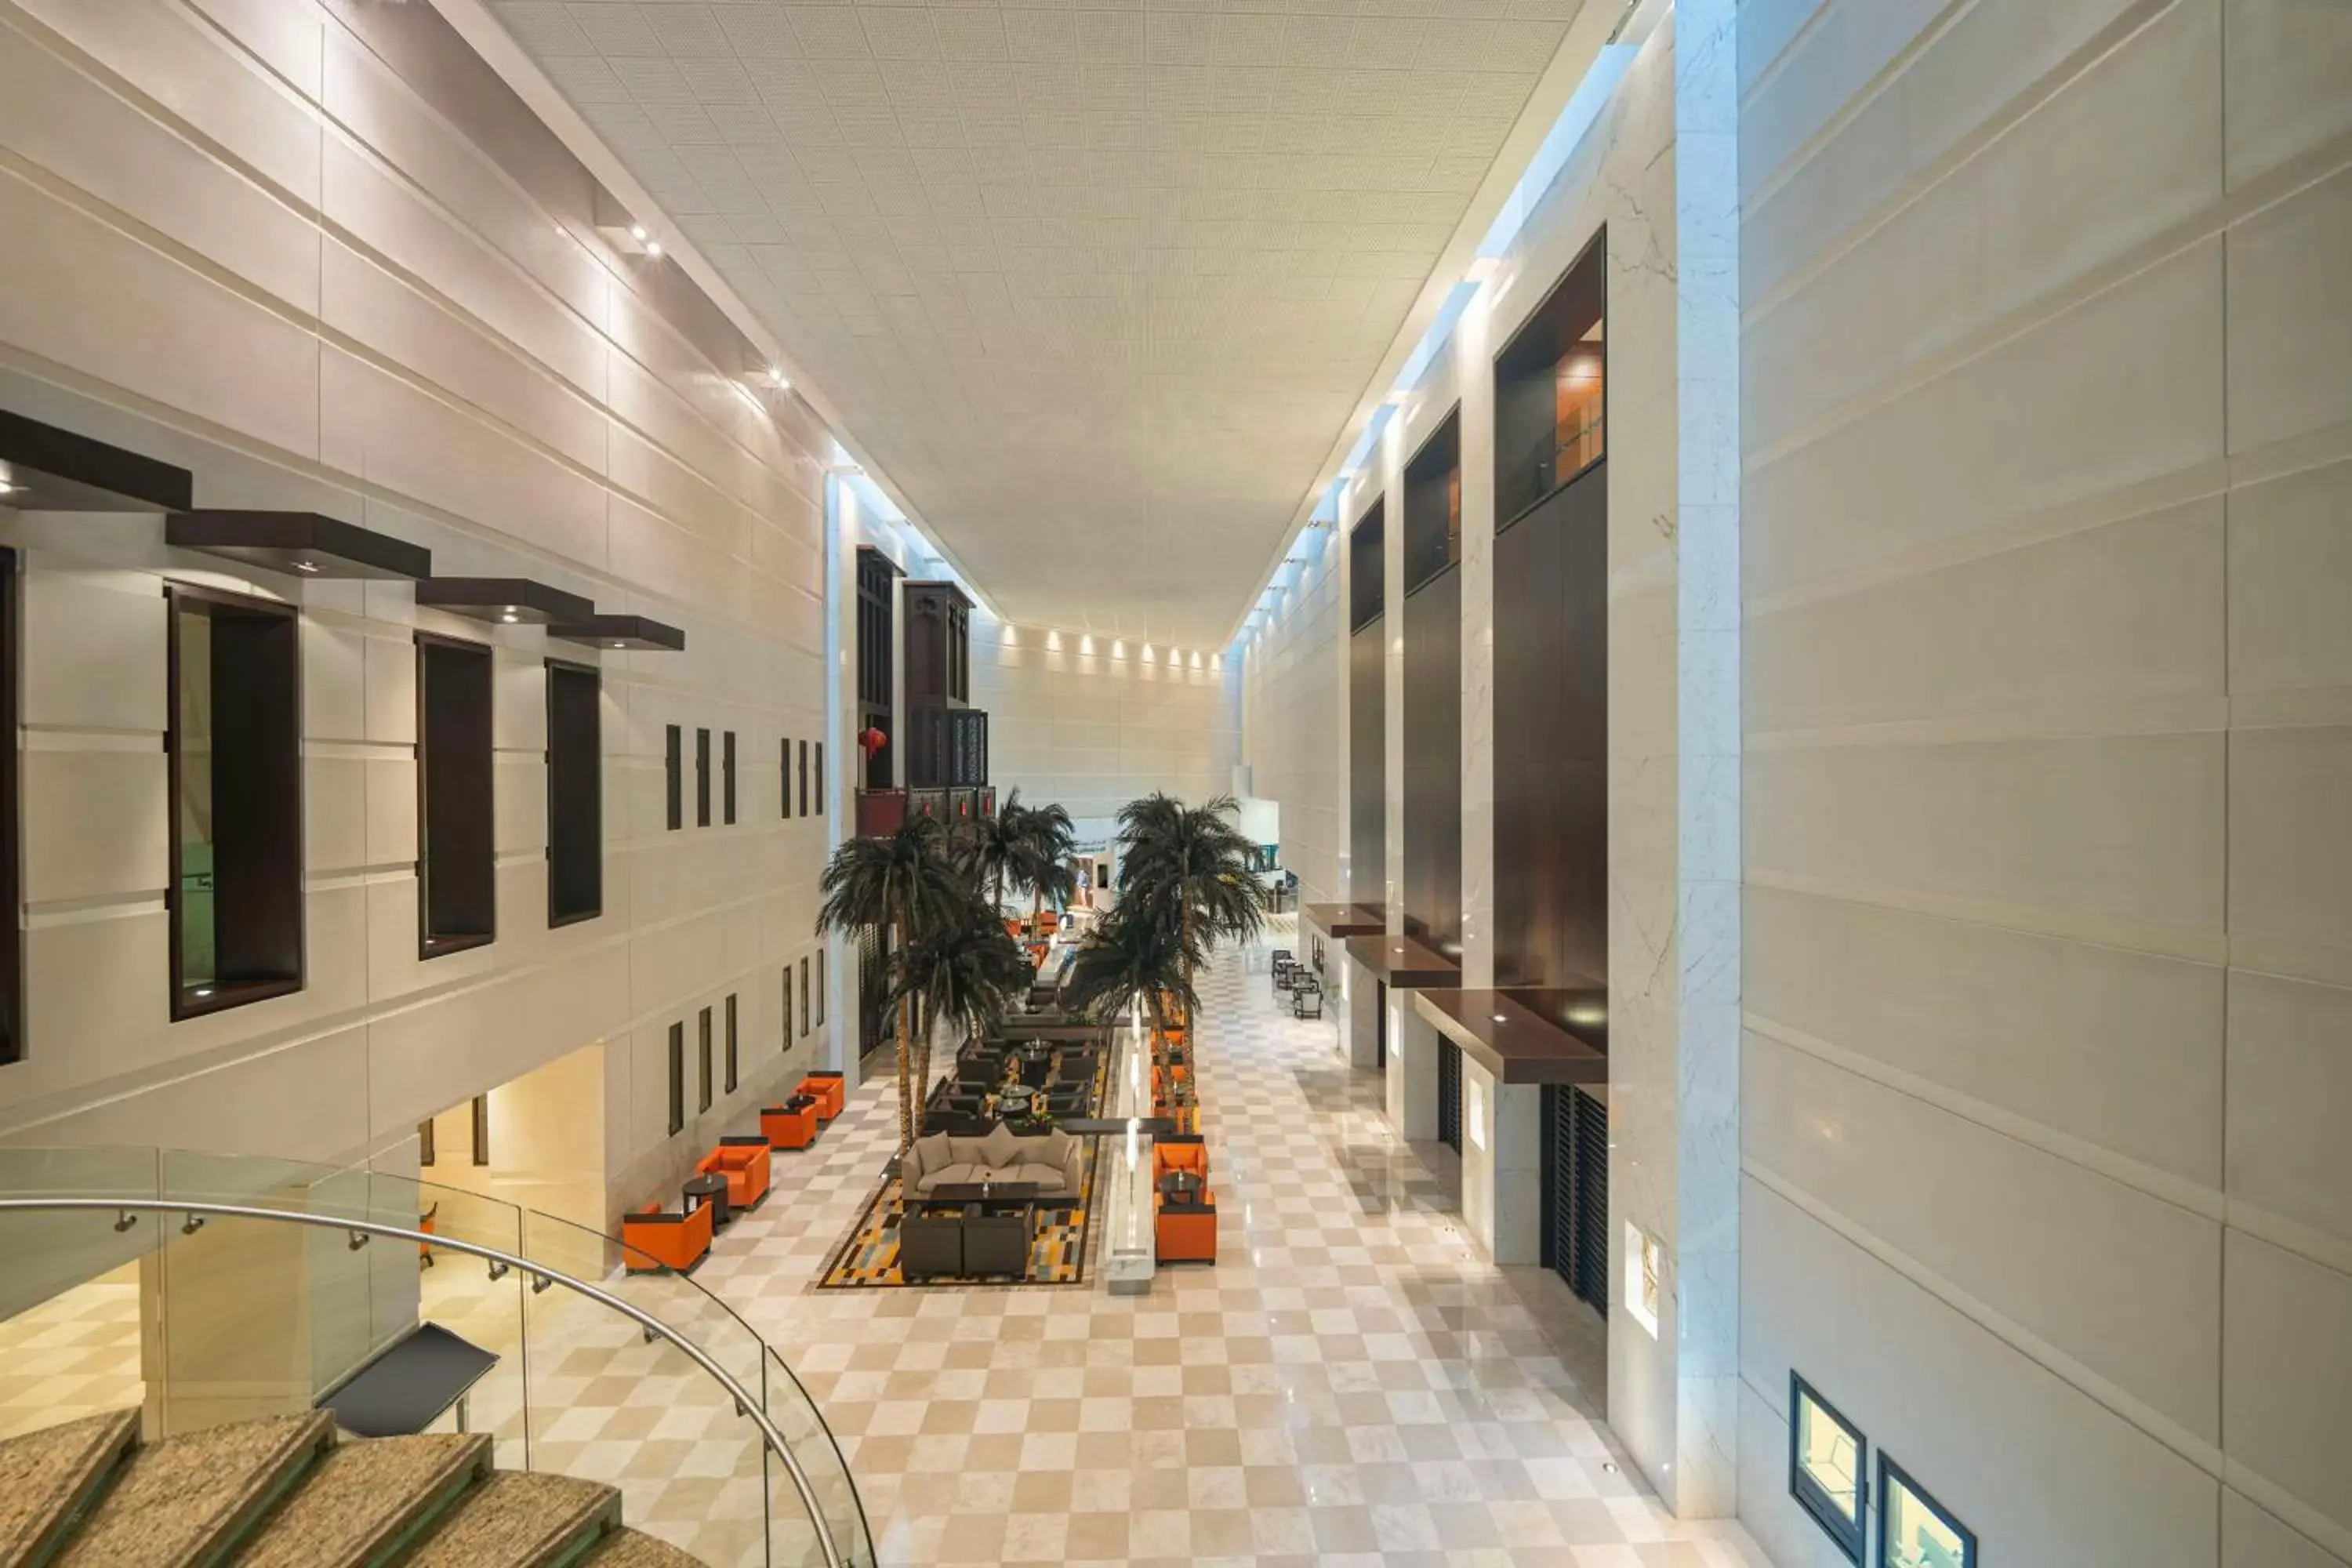 Lobby or reception in Hyatt Regency Dubai - Corniche